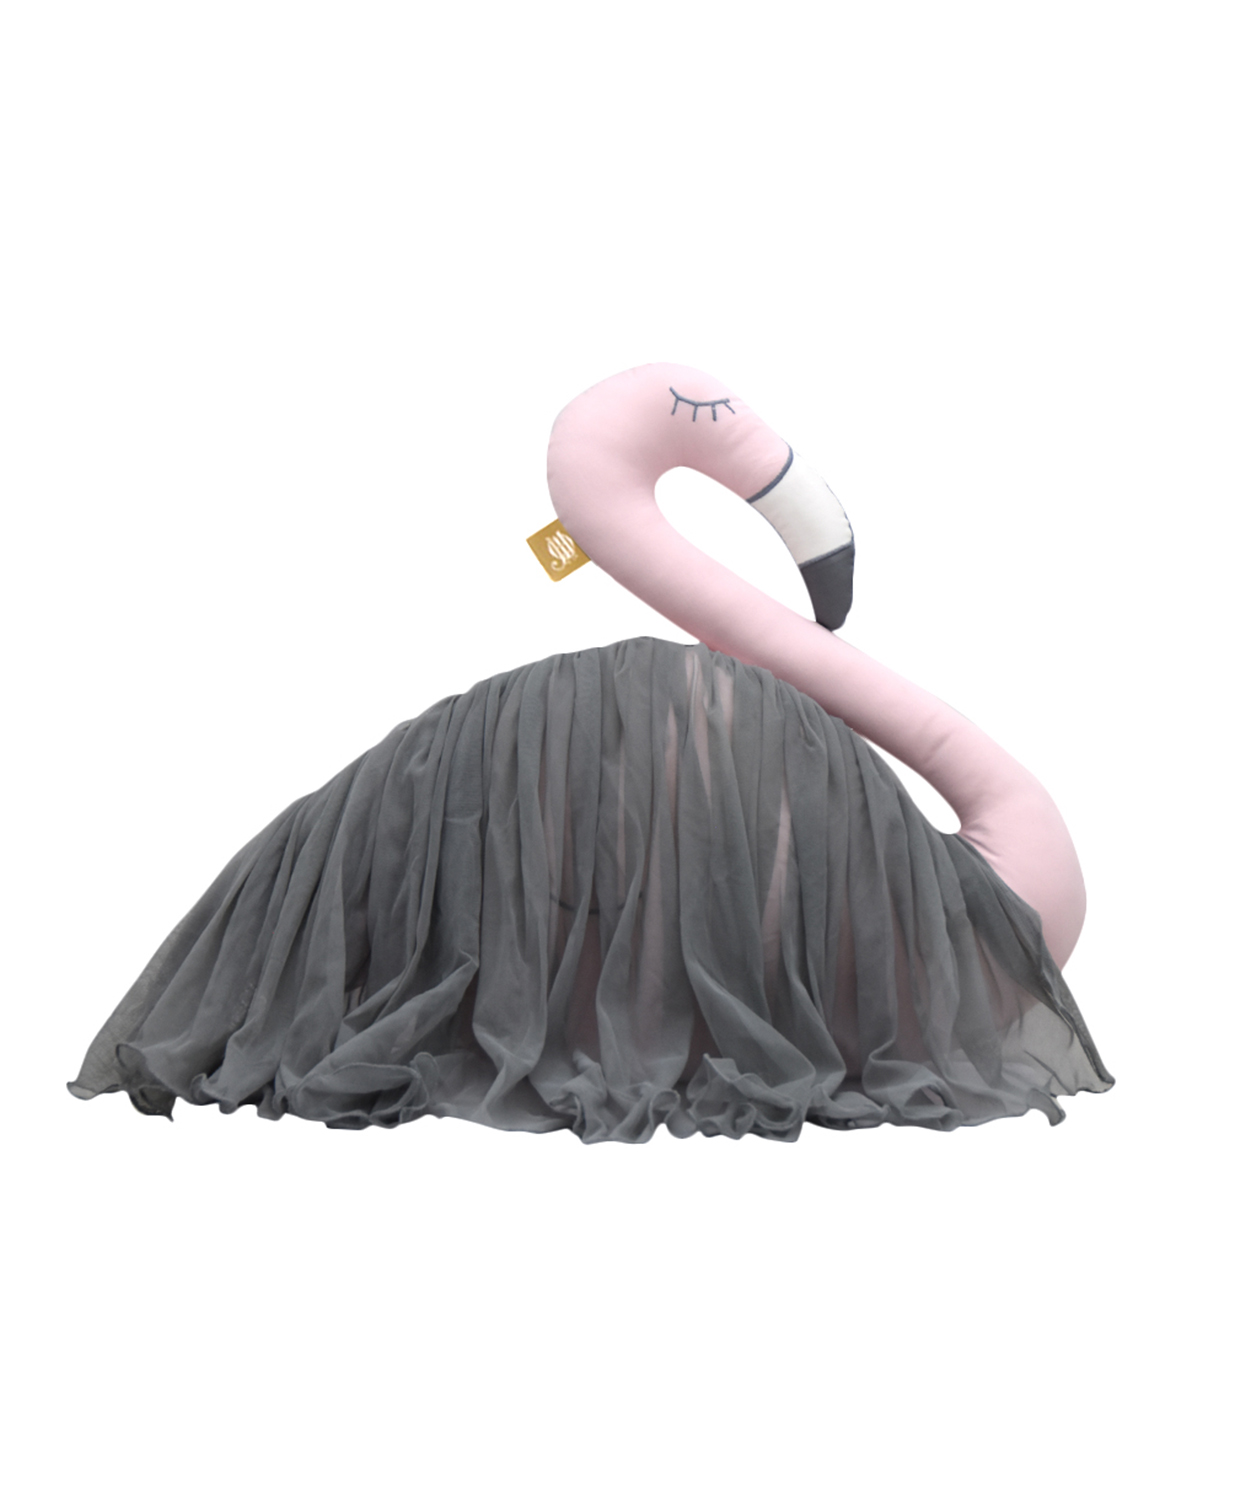 Fashionista Flamingo Cushion